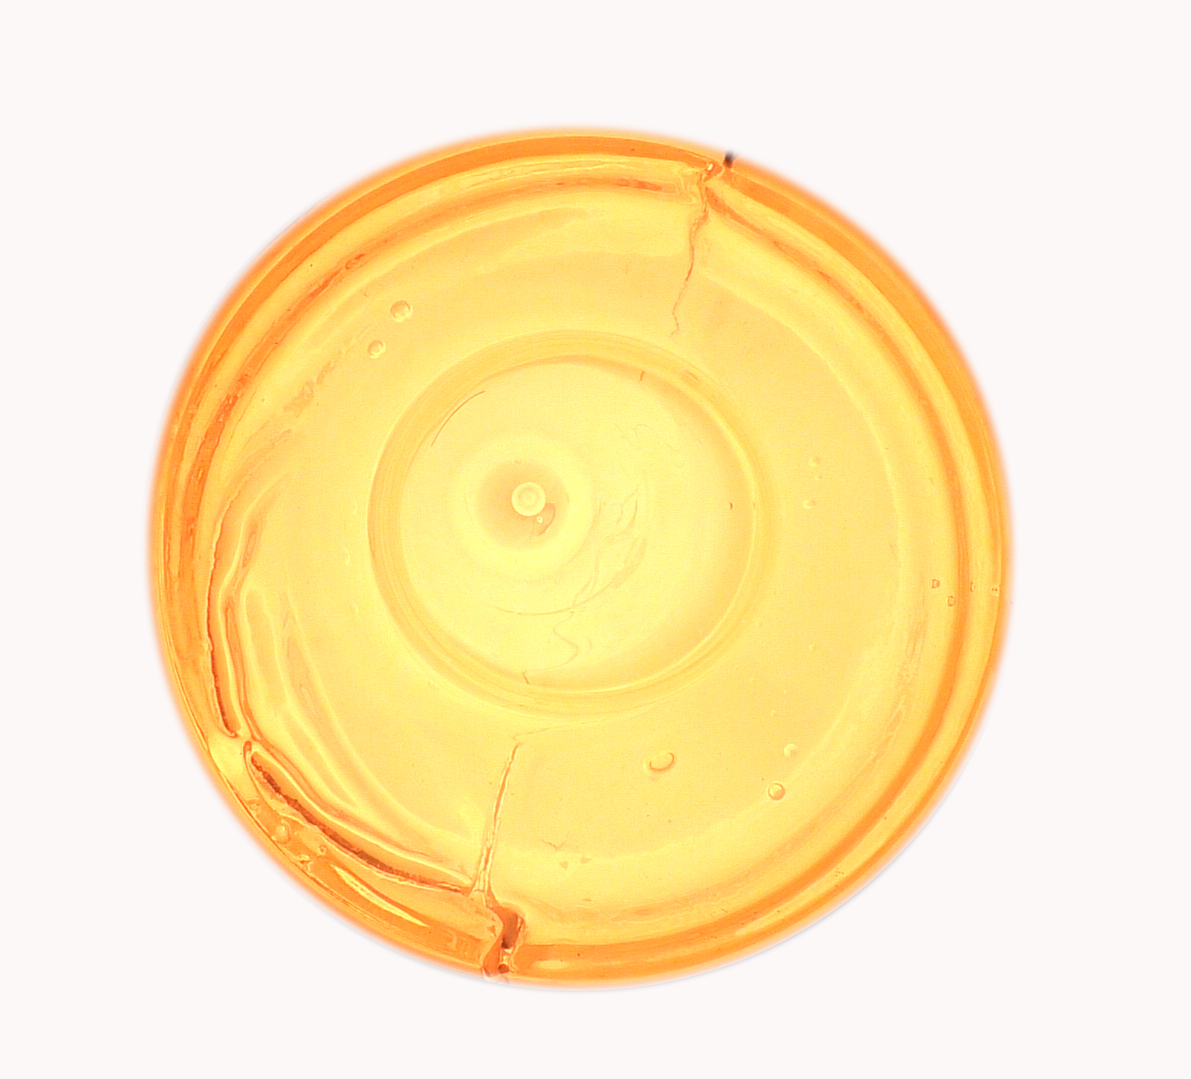 A yellow glass circle